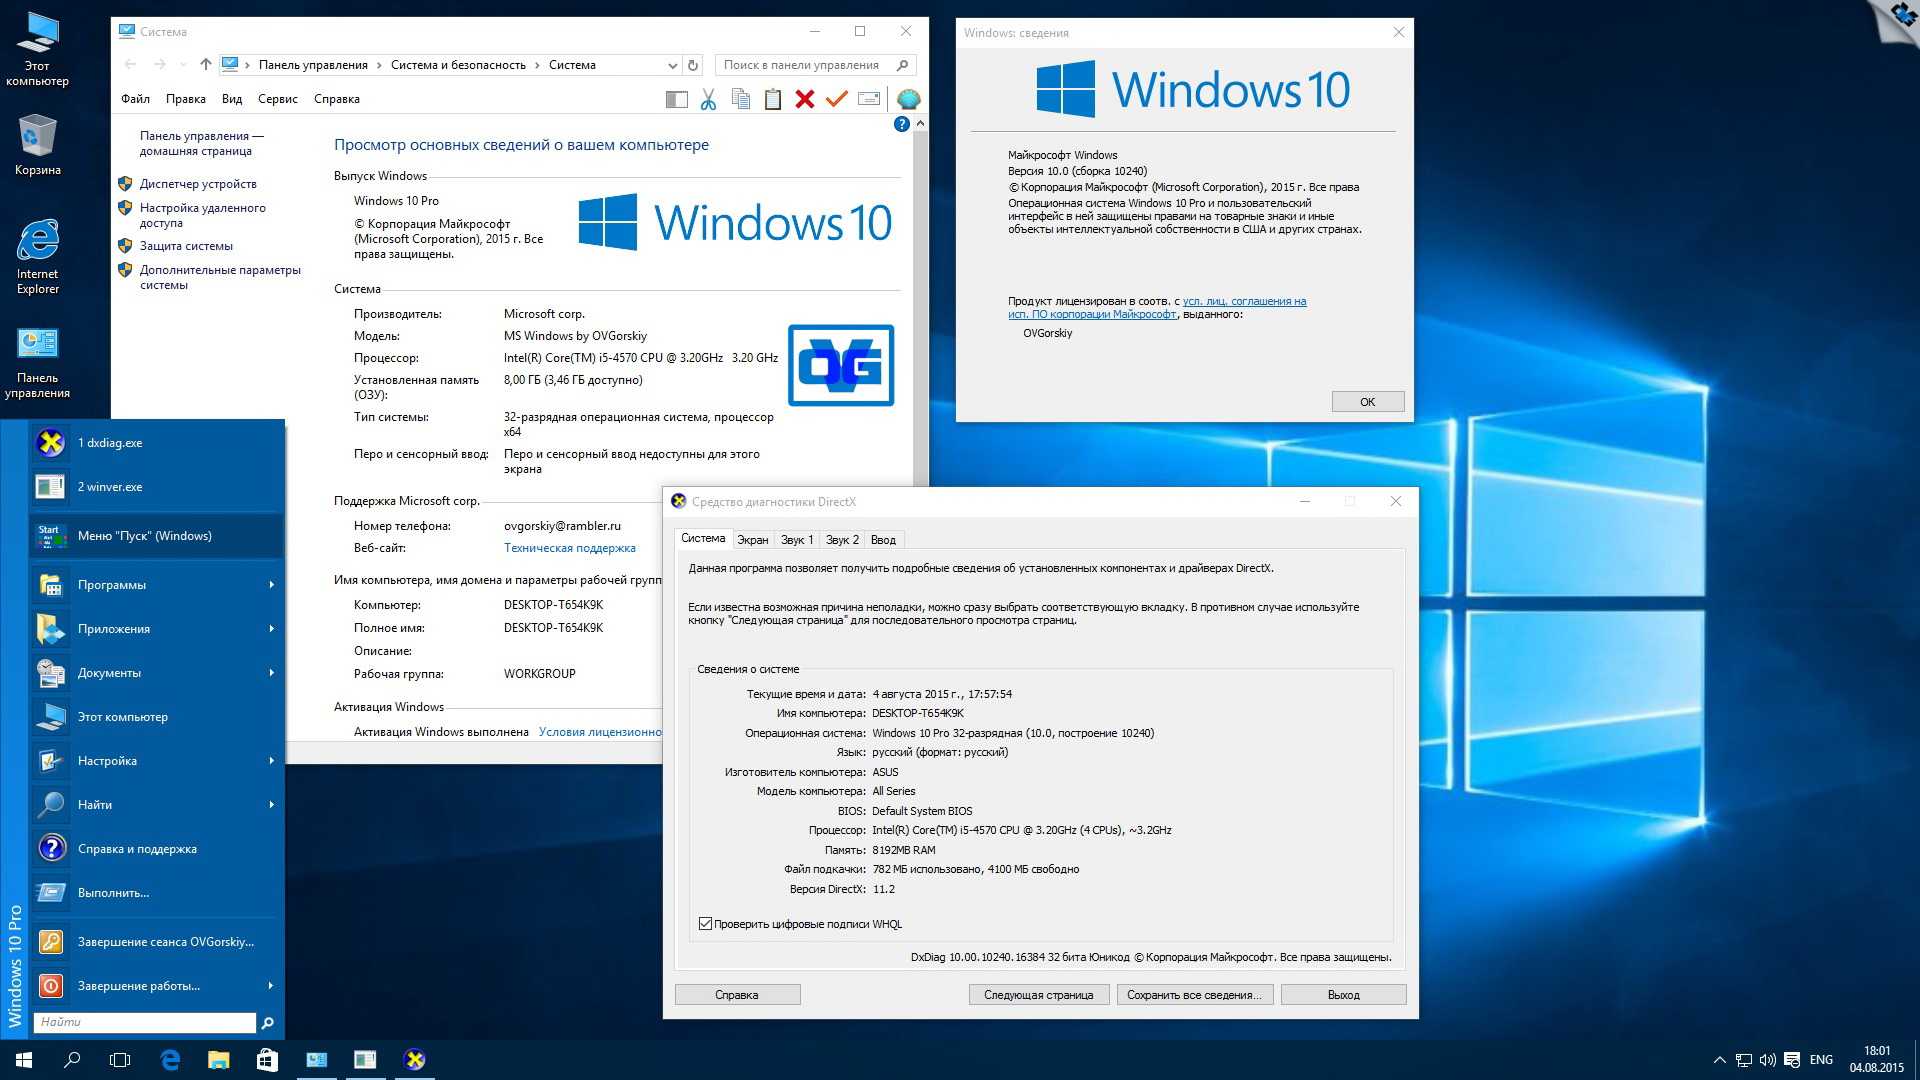 Windows 10 list. Операционная система Windows 10 Pro x64. Окно справочной системы Windows 10. Системы виндуса 10. Последняя версия виндовс 10.